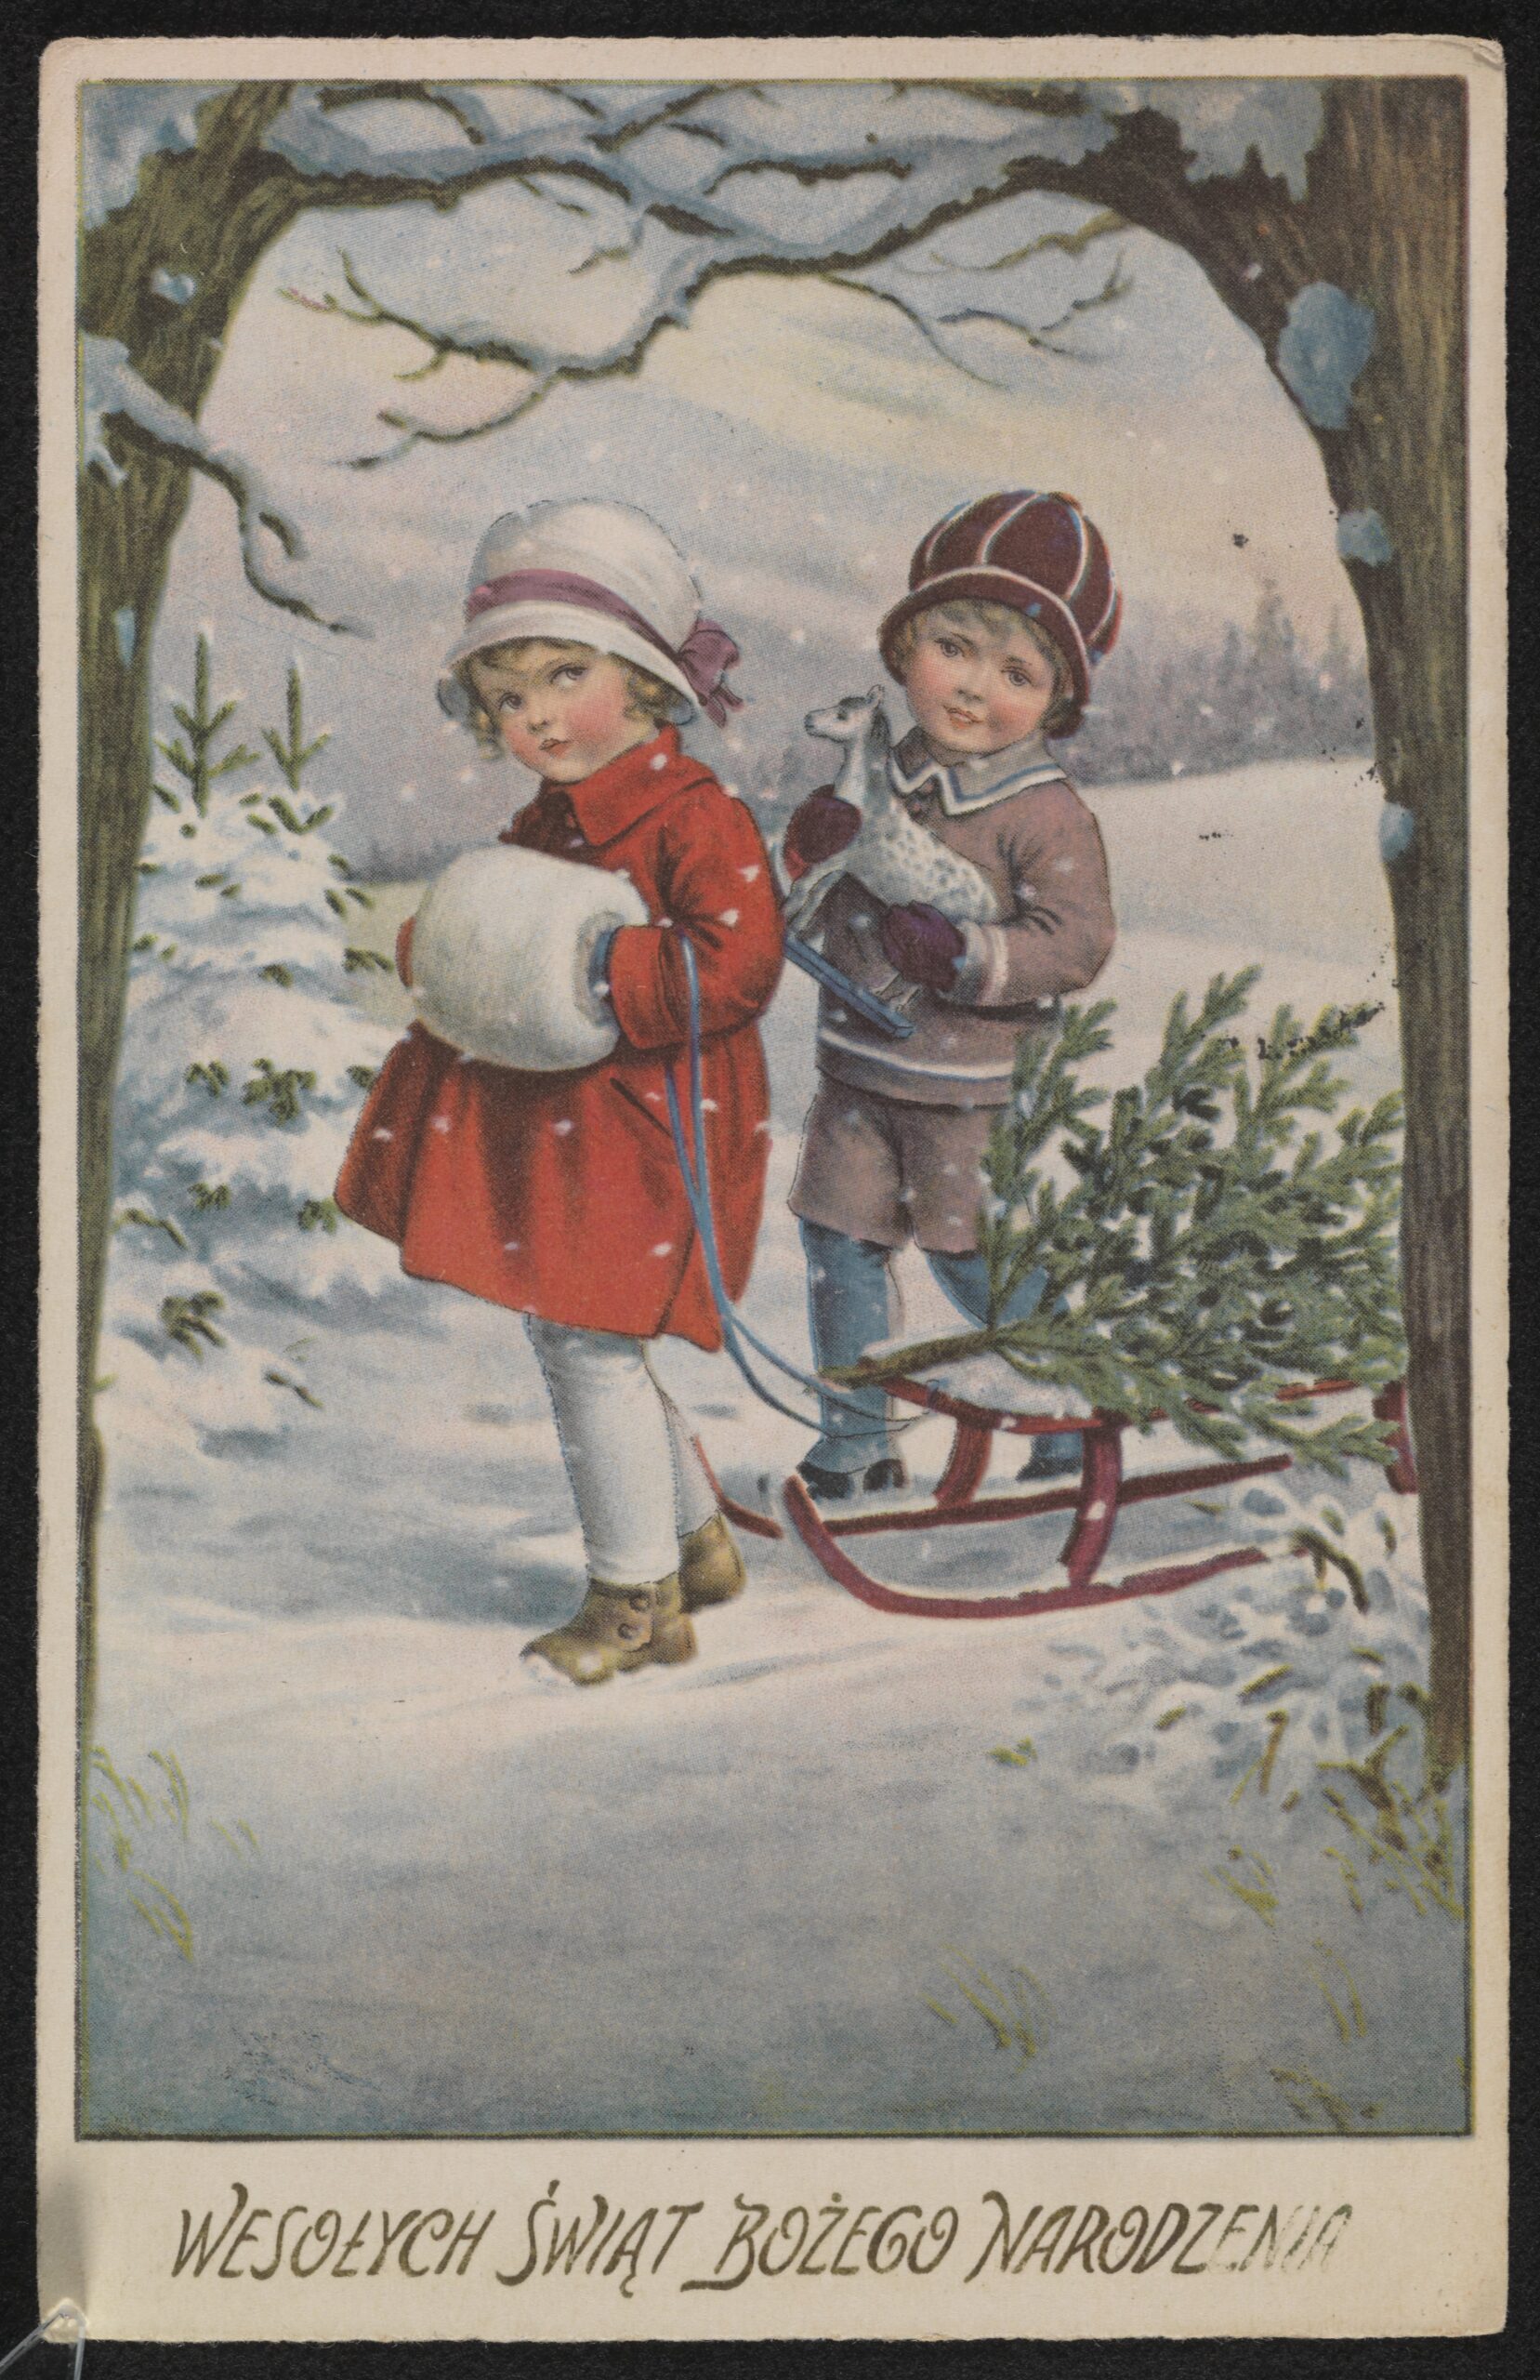 Dwoje dzieci pomiędzy drzewami trzyma sanki, na których leży mała choinka. Pada śnieg. Dziewczynka ma na rączkach mufkę. Chłopiec trzyma zabawkę konika. Na dole napis: Wesołych świąt Bożego Narodzenia.